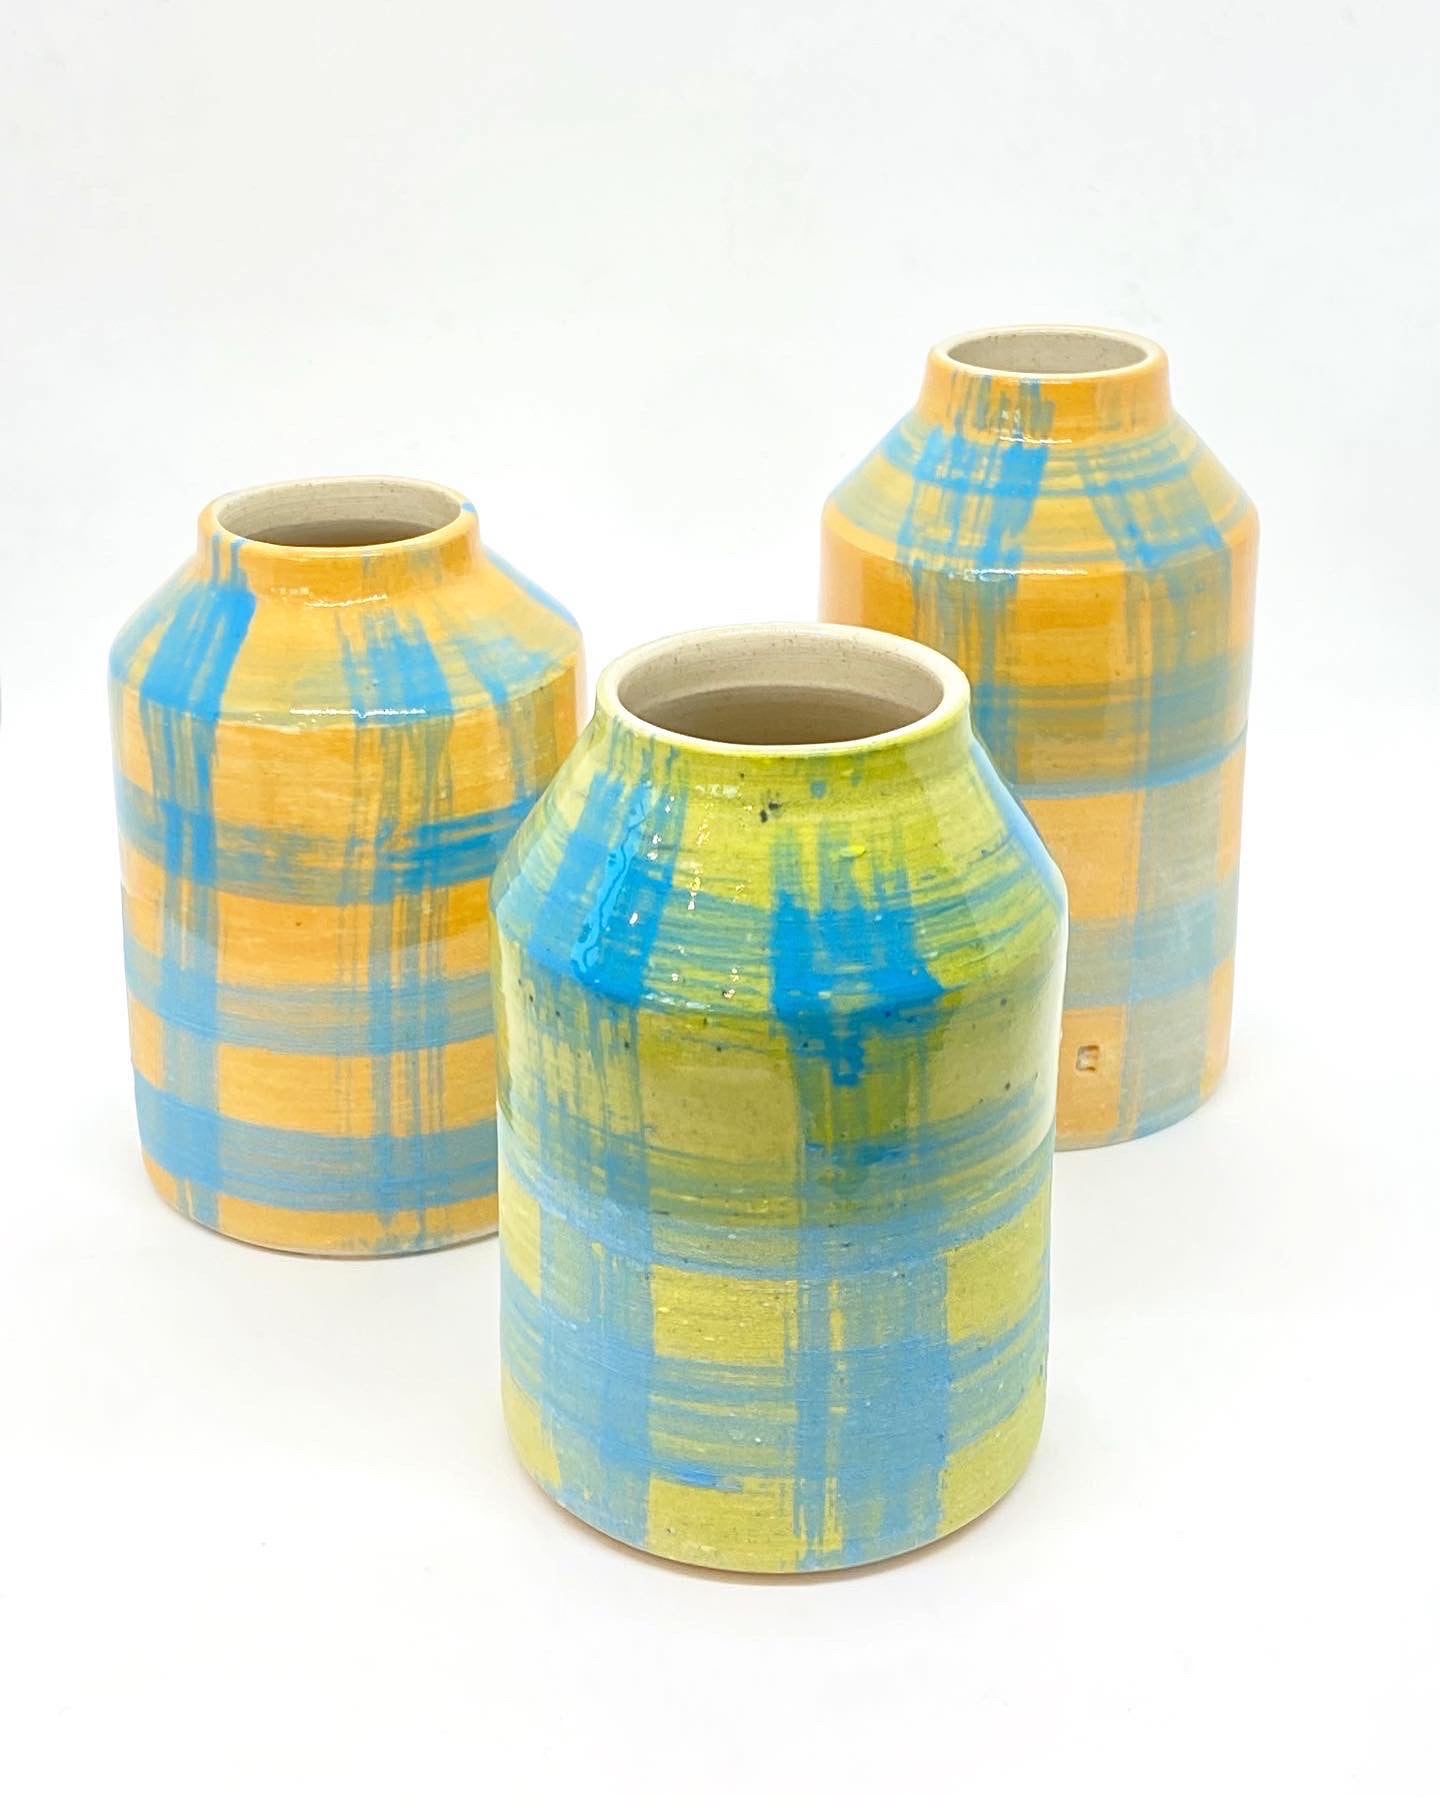 Ceramic Vase - Orange & Blue Gingham